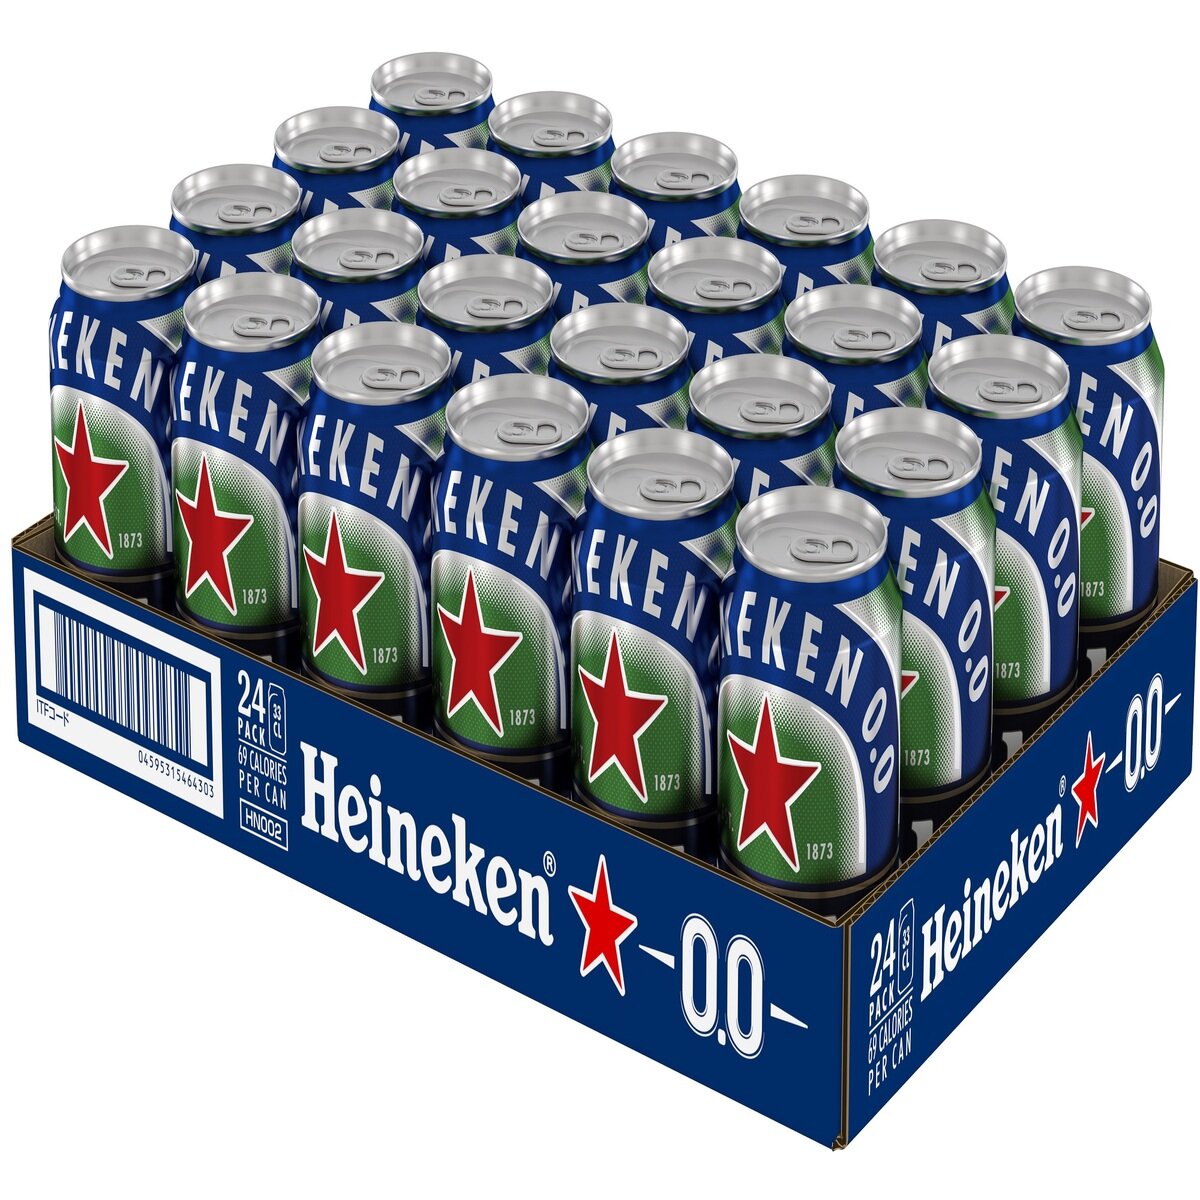 ハイネケン 0.0 ノンアルコール 330 ml x 24 缶